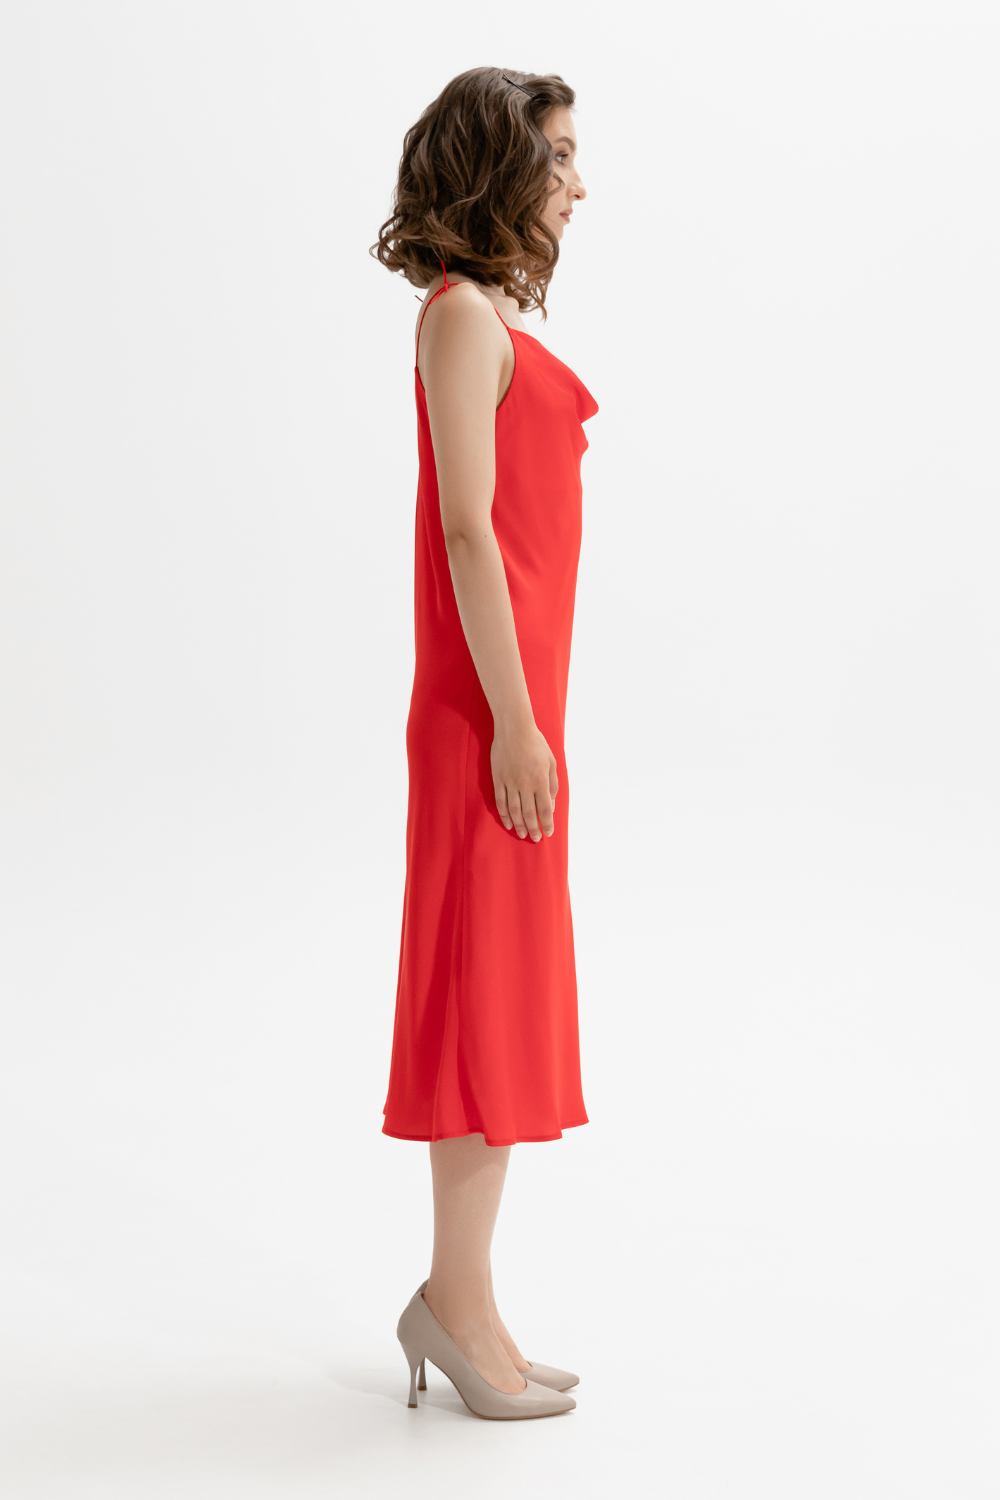 Červené hedvábné šaty s drážkou v oblasti dekoltu (M) (Mint) 821